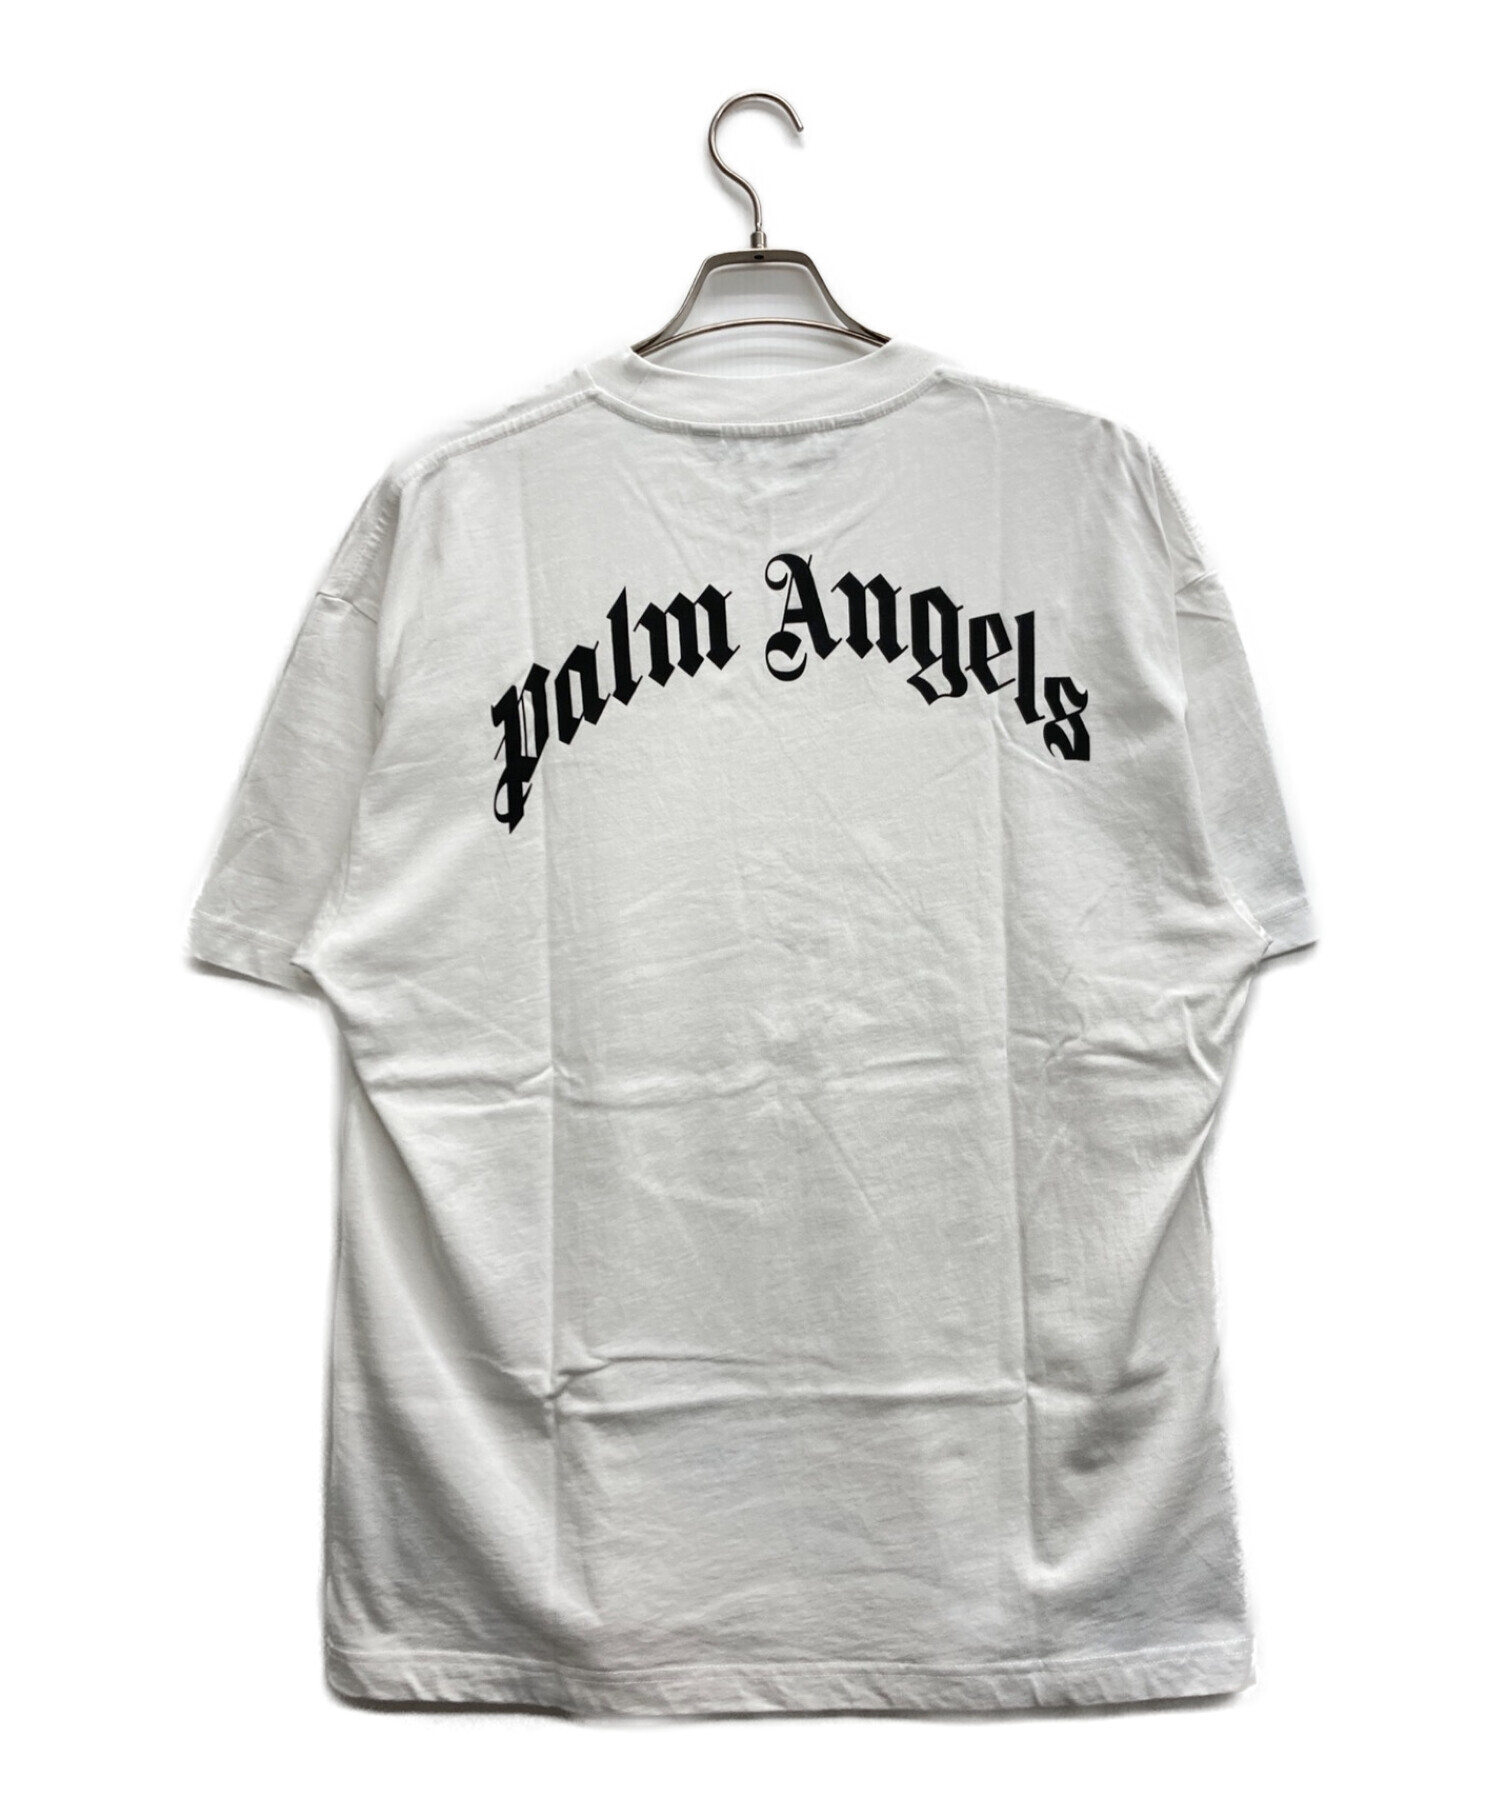 Palm Angels パームエンジェルス Bear Tシャツ - Tシャツ/カットソー